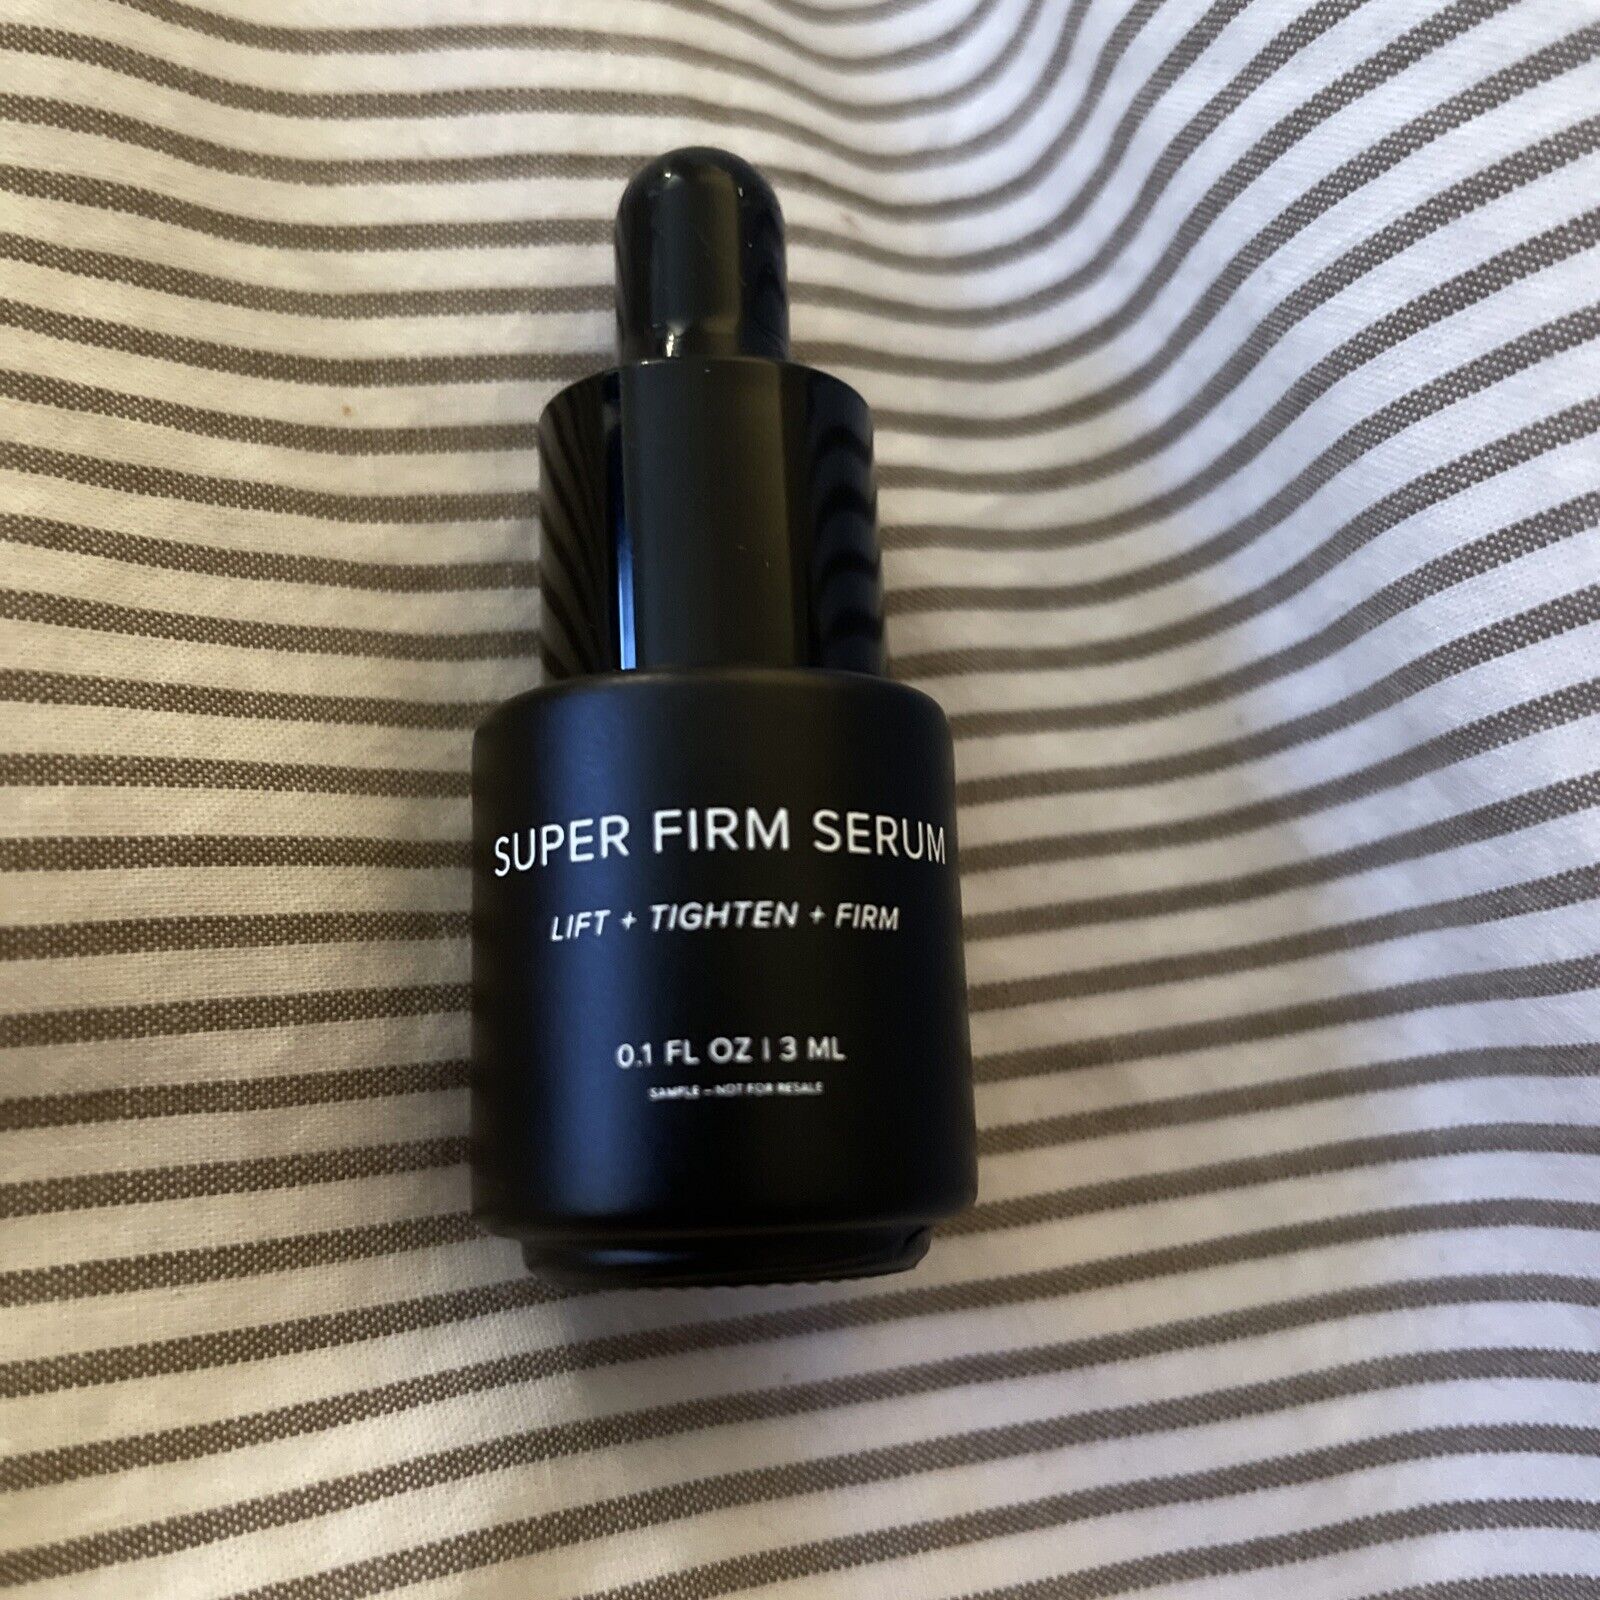 Super Firm Serum Dime Trial Size  - 3 ml